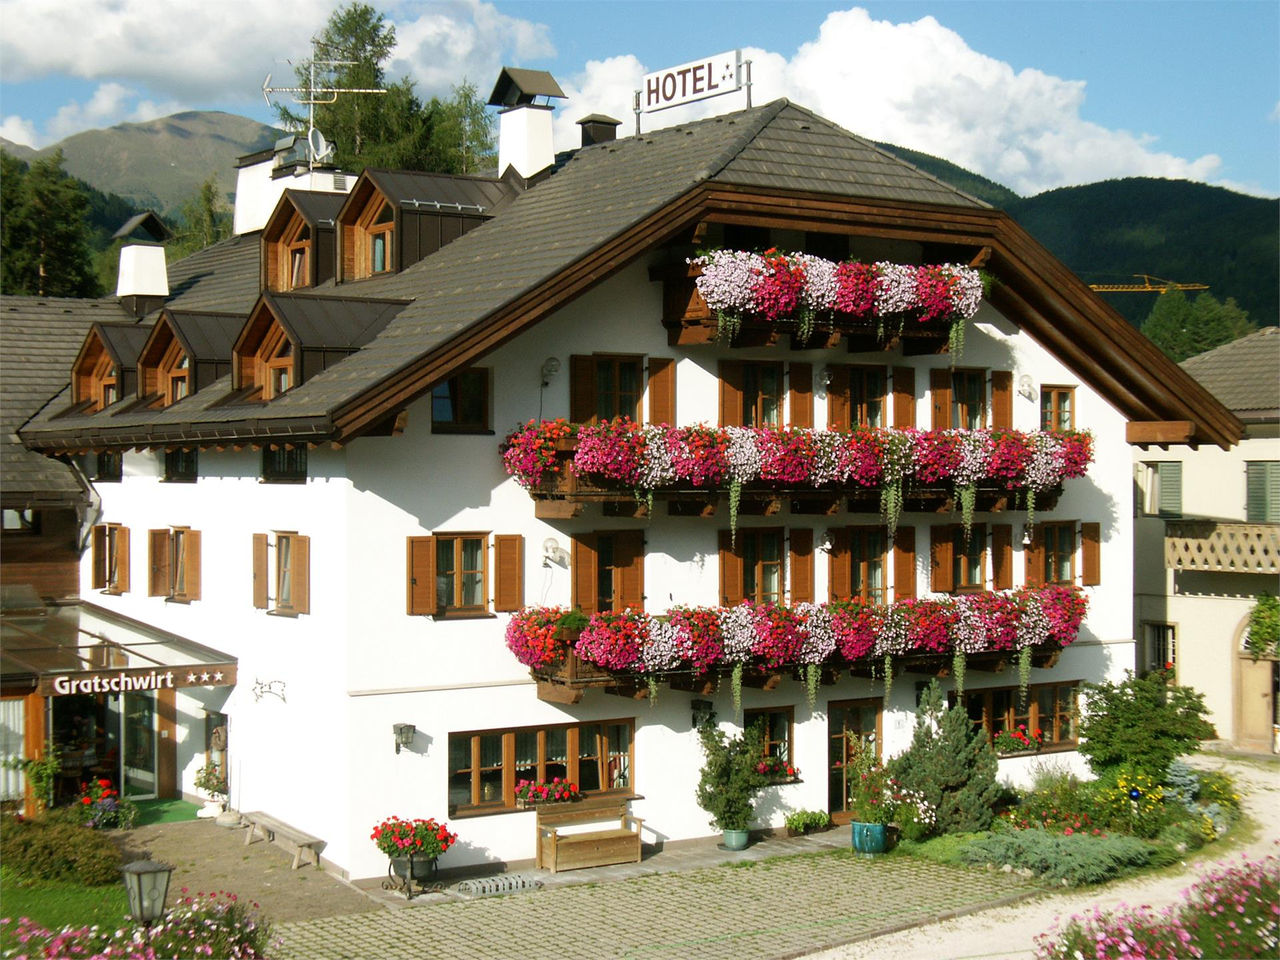 Hotel Restaurant Gratschwirt Toblach 1 suedtirol.info